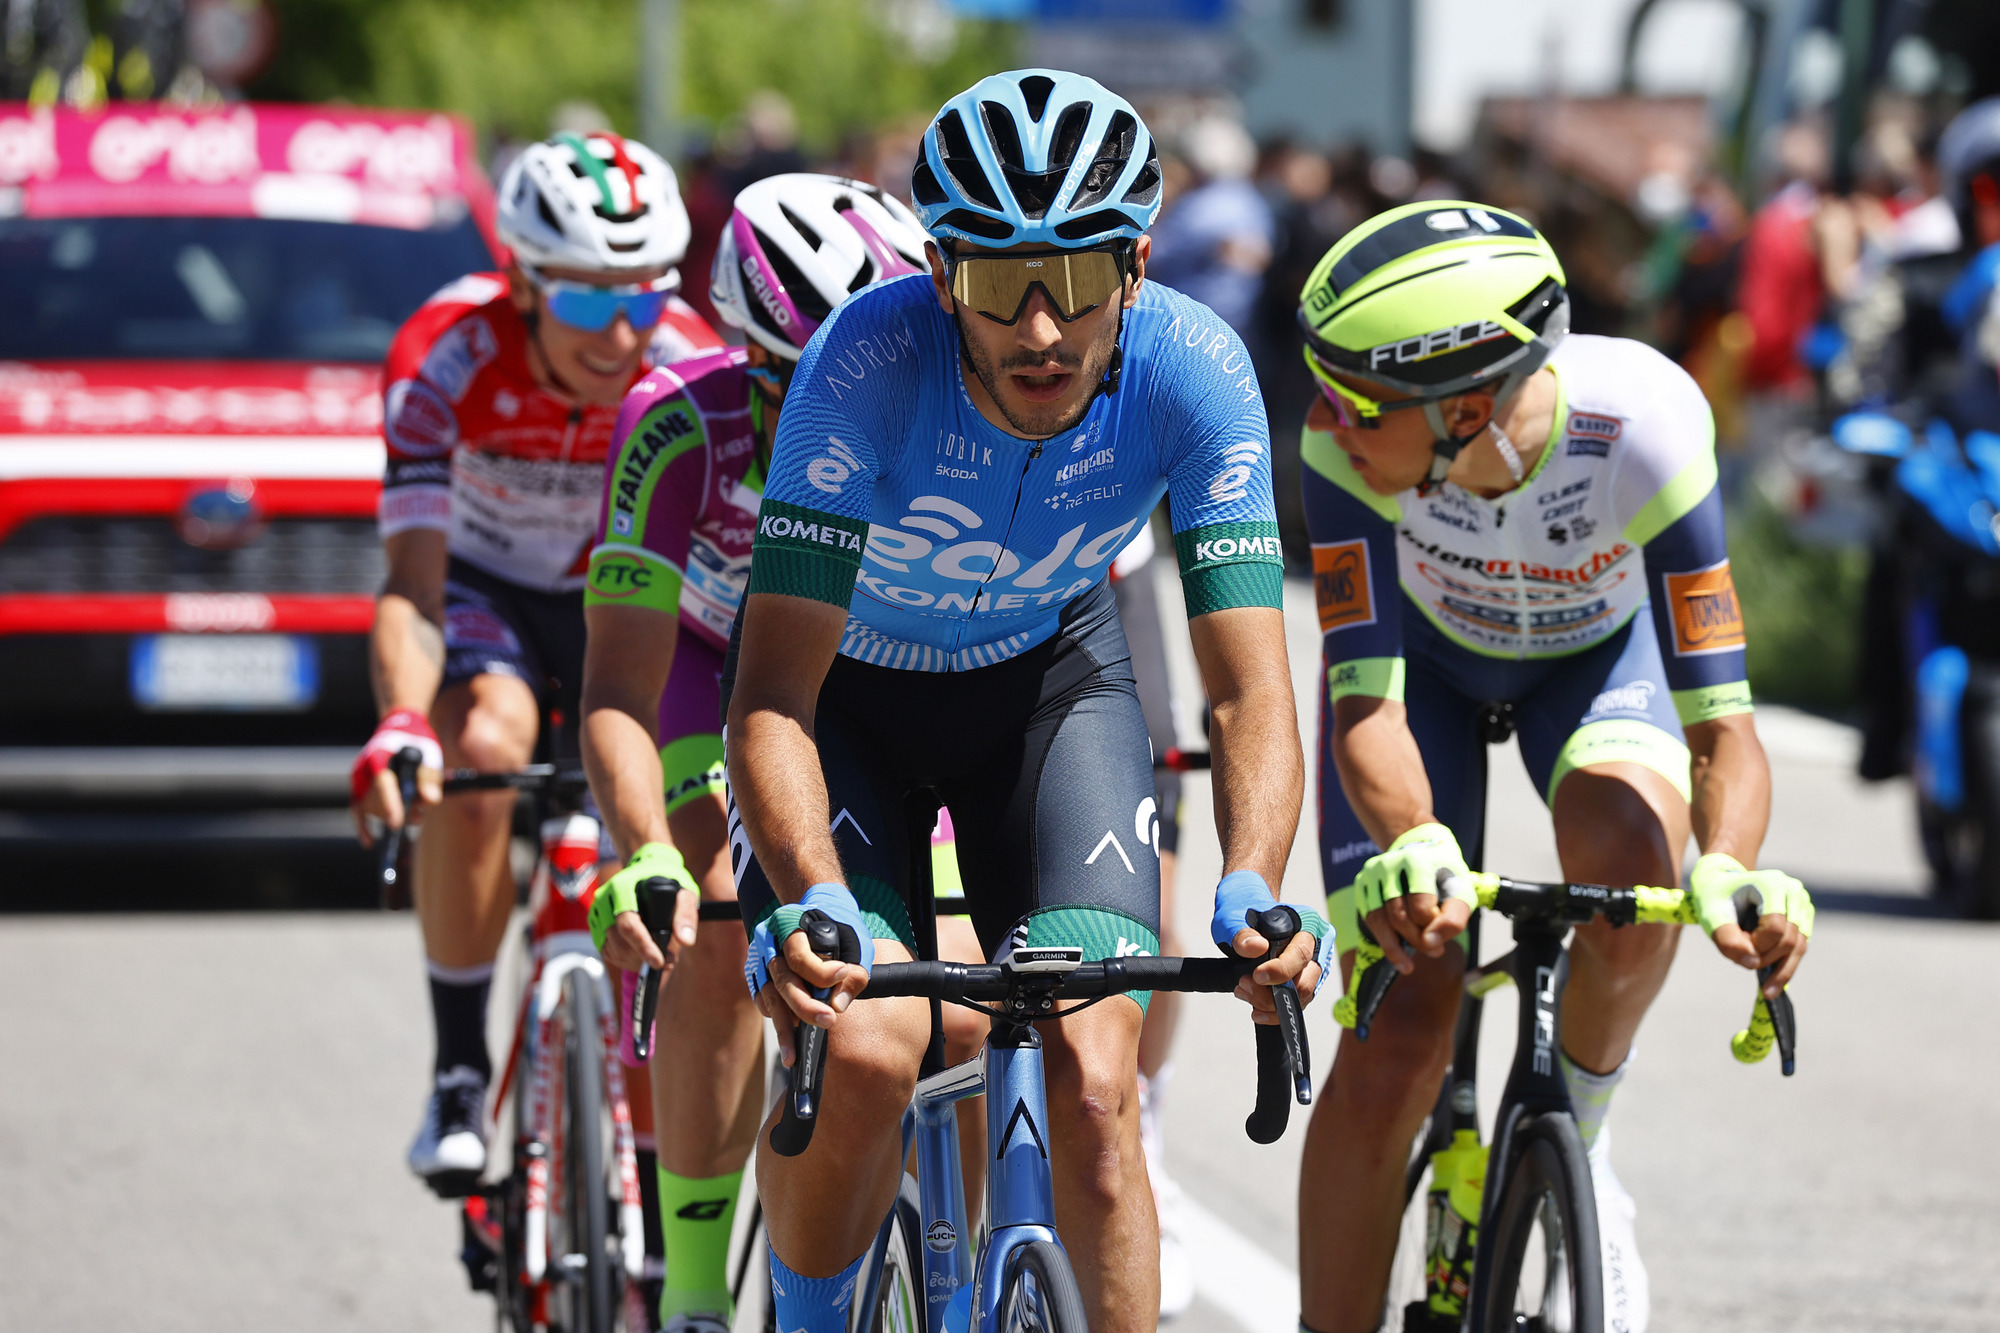 Rookie team Eolo-Kometa holding their own in Giro d'Italia | Cyclingnews